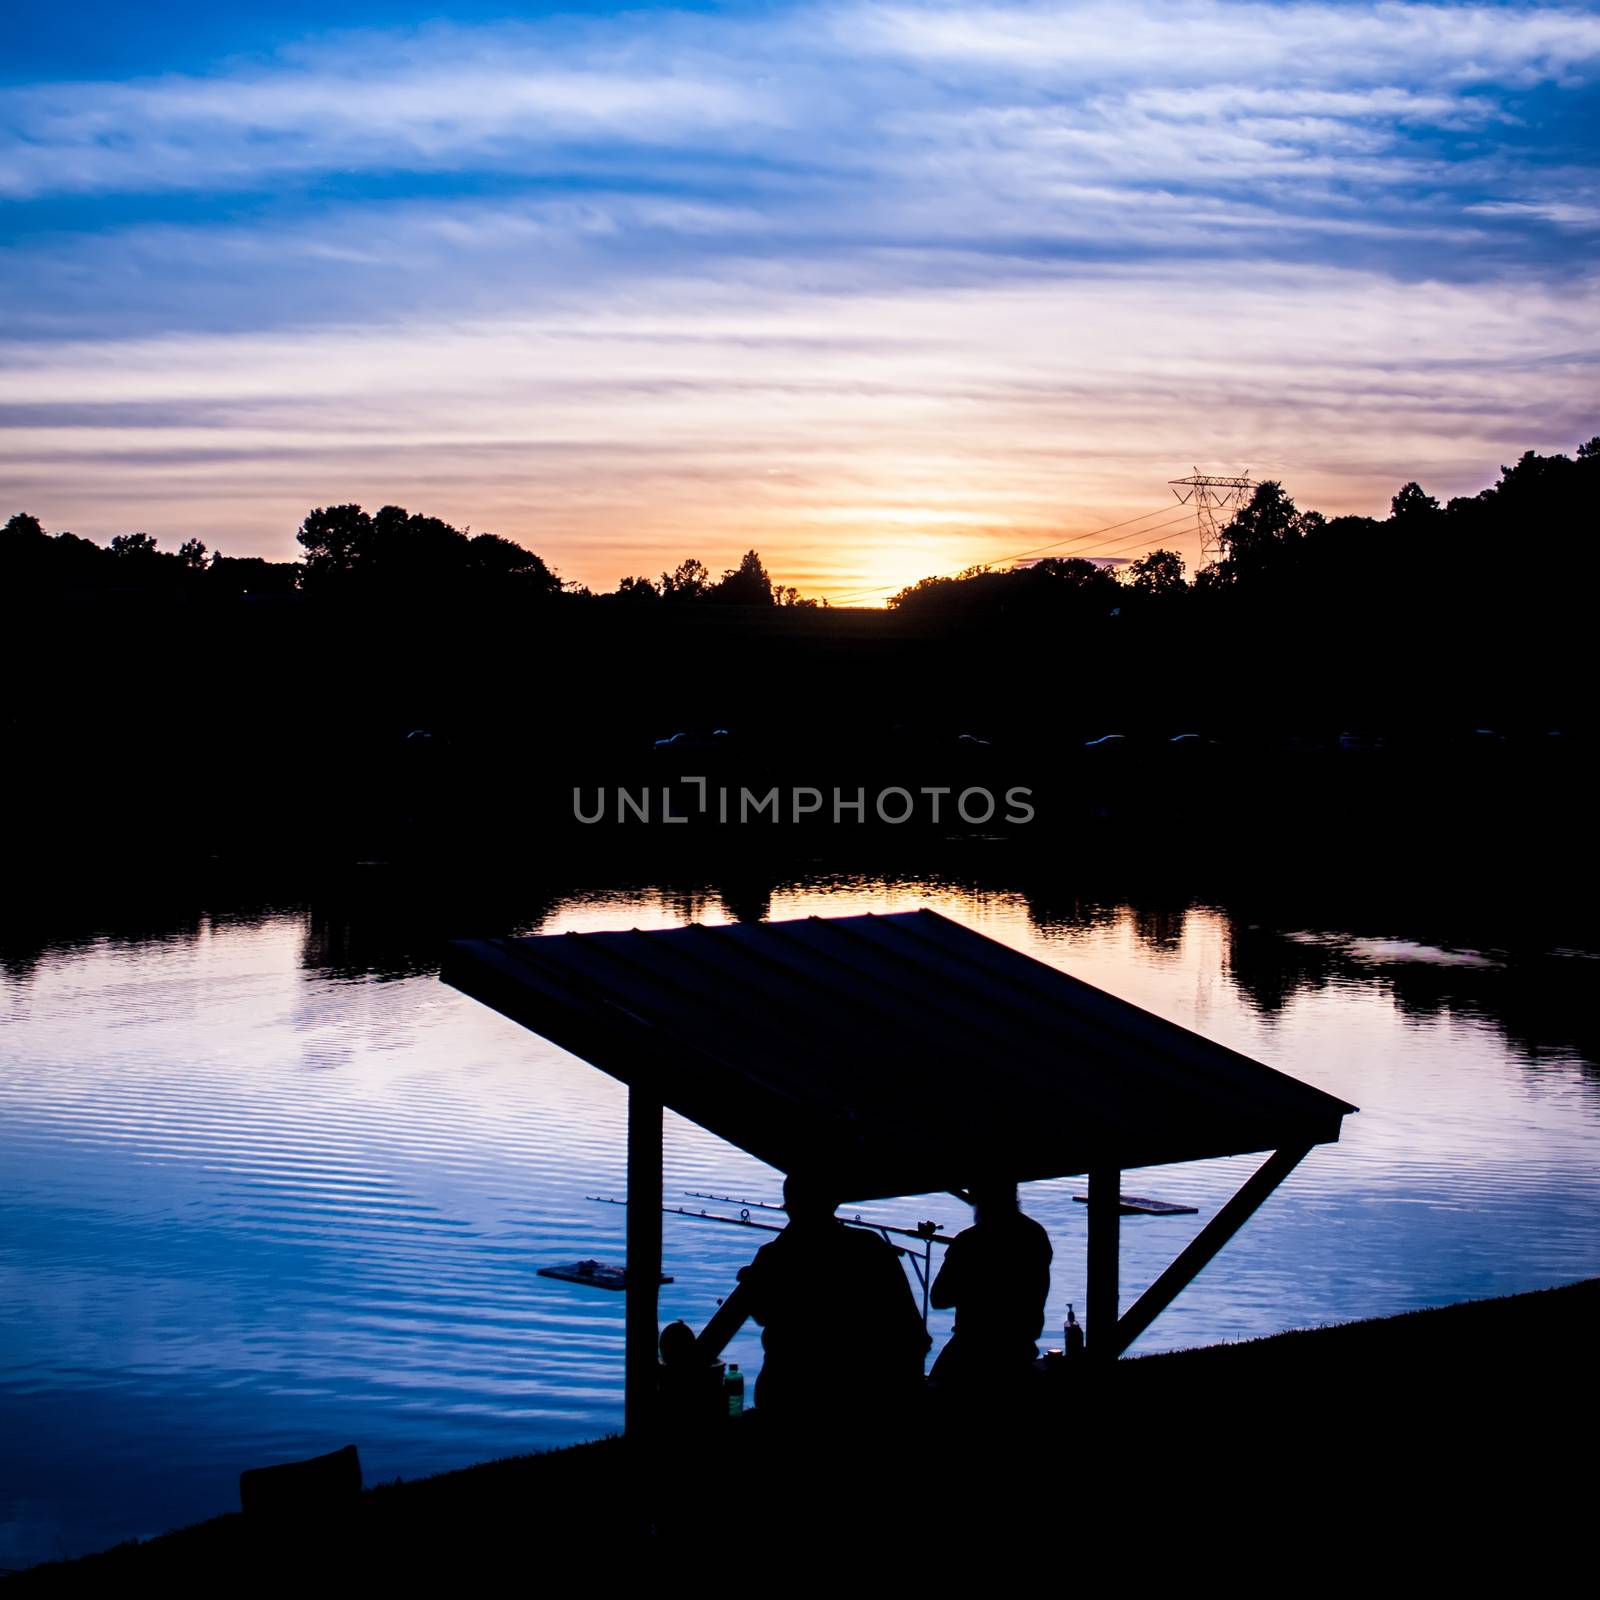 fisherman fishing at sunset on a like